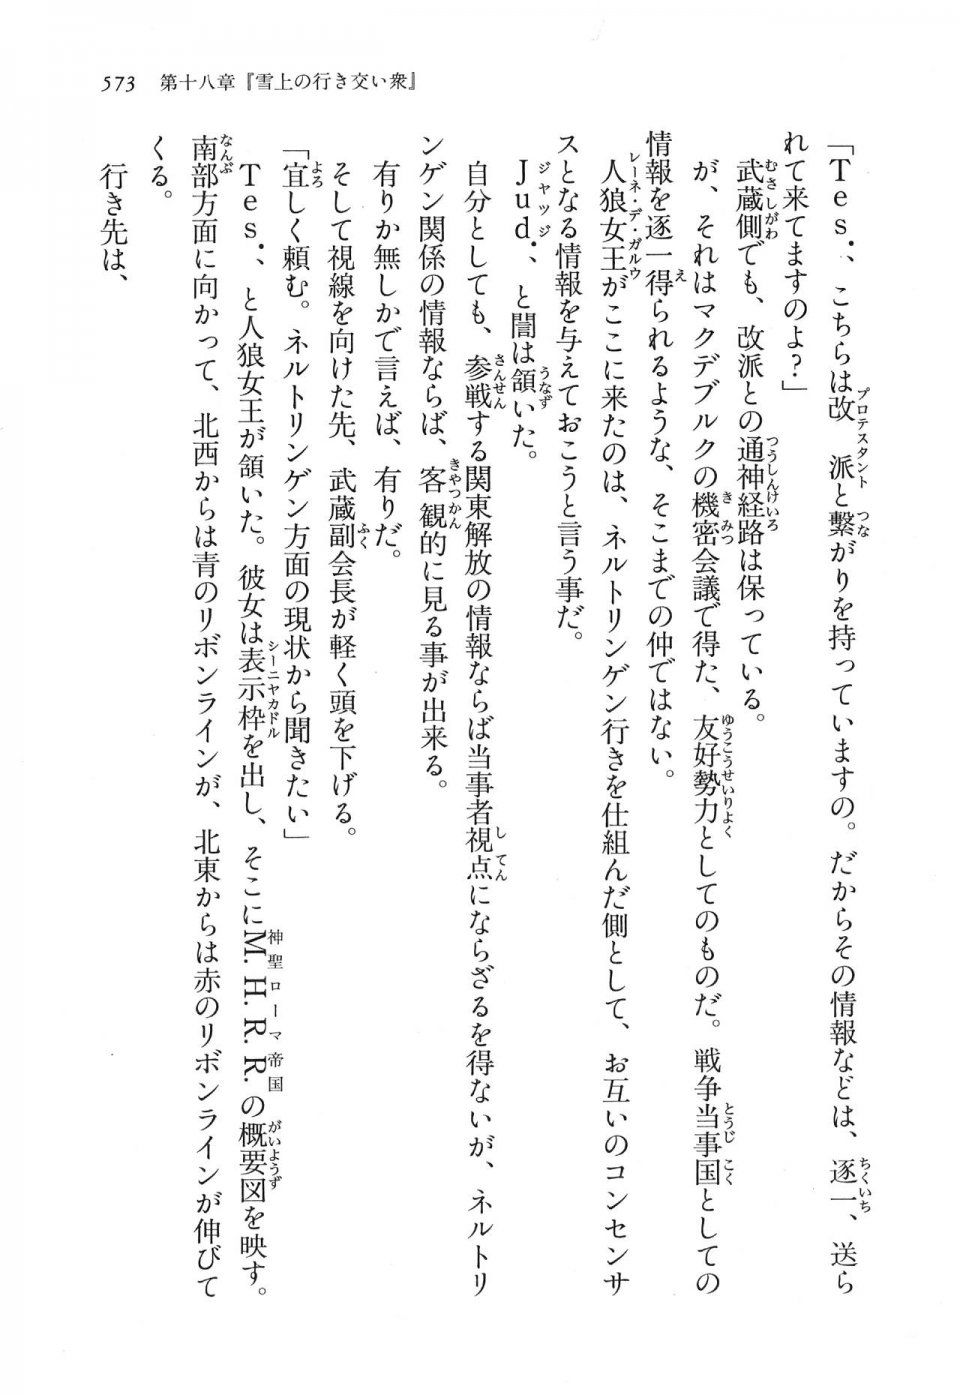 Kyoukai Senjou no Horizon LN Vol 16(7A) - Photo #573